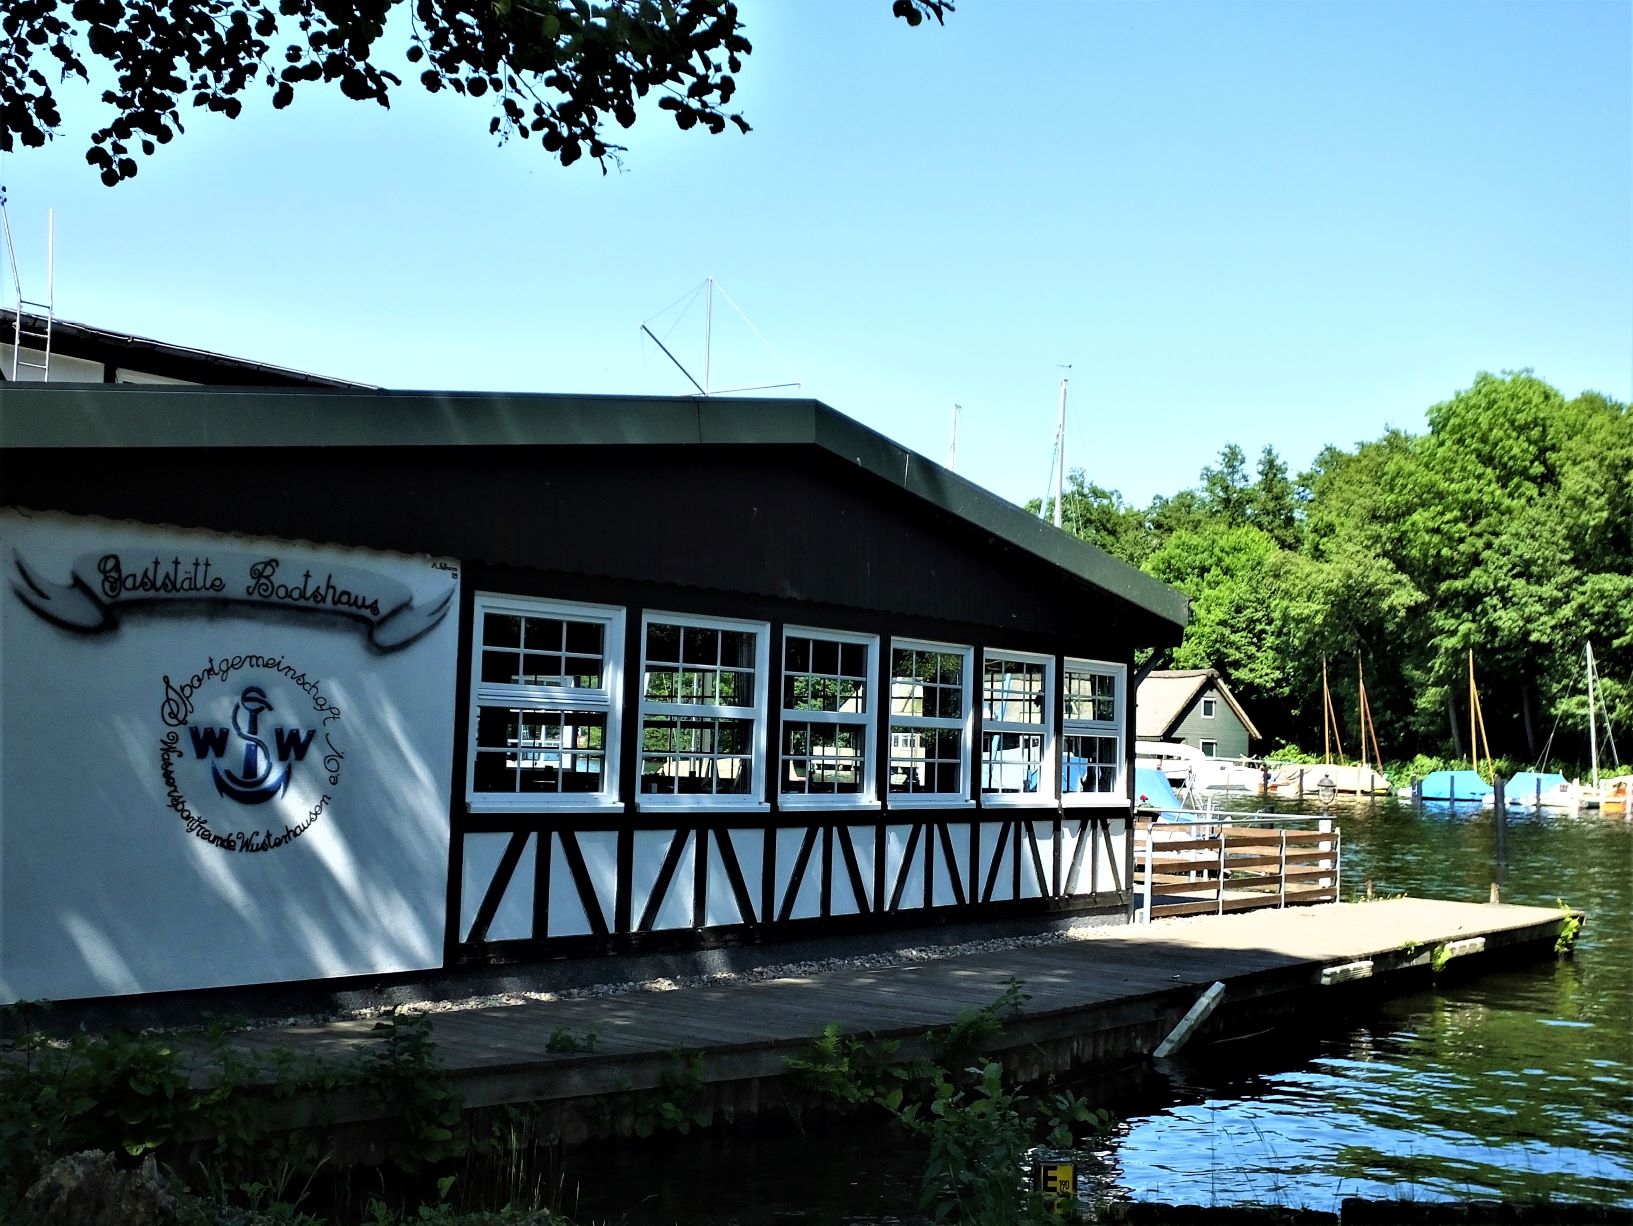 Eines der idyllisch am See gelegenen Bootshäuser mit Gaststätte.